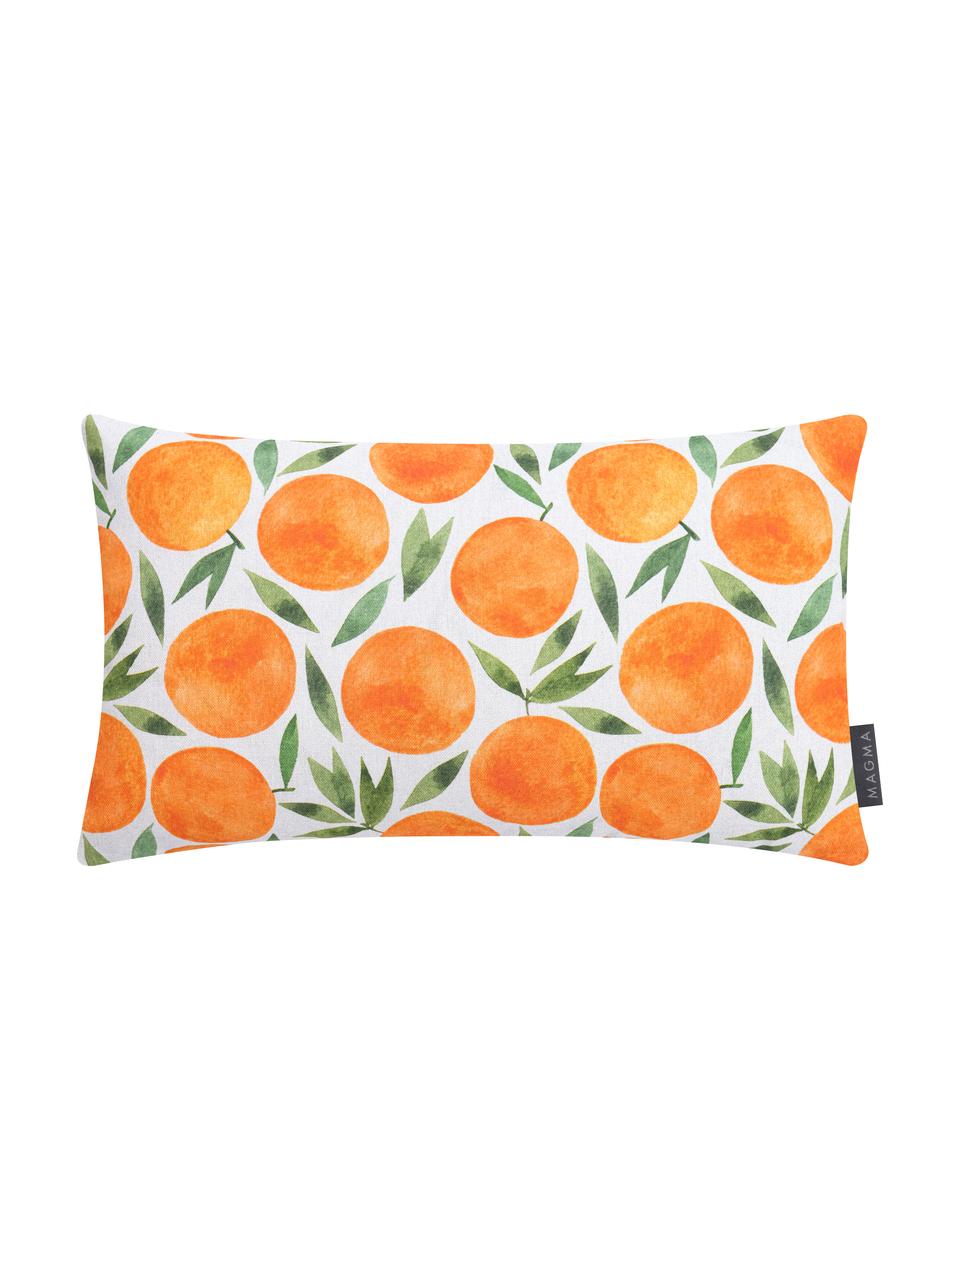 Poszewka na poduszkę Orange, Pomarańczowy, biały, zielony, S 30 x D 50 cm